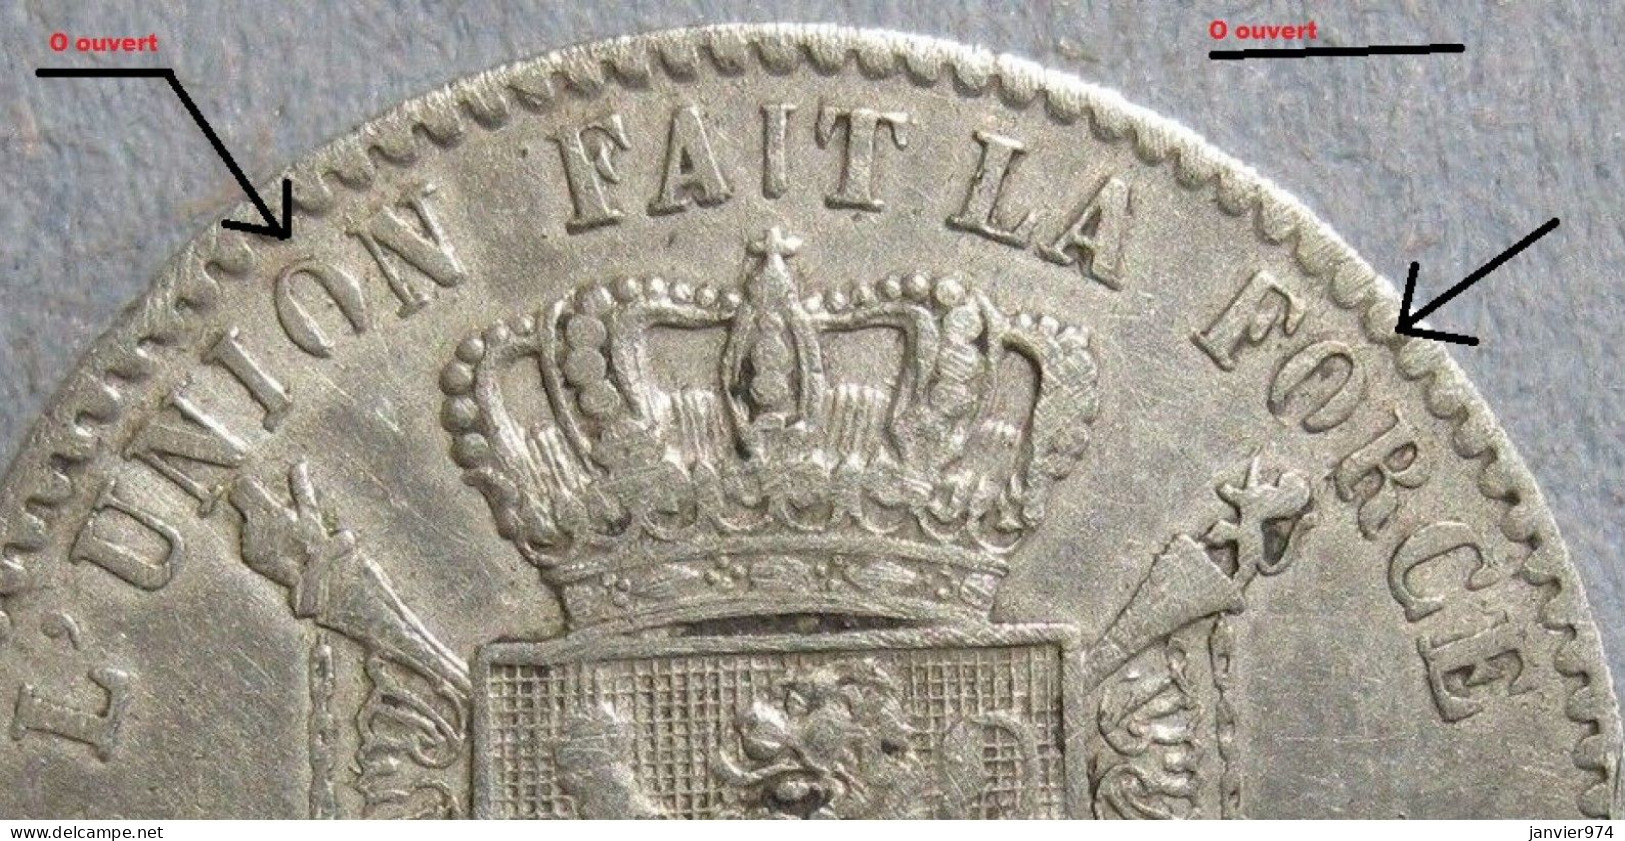 Inédit - 1 Franc 1869 Variété O Ouverts , Léopold II. Unique, Inconnue Dans Le Livre De J. DE MEY Et G. PAUWELS - 1 Frank